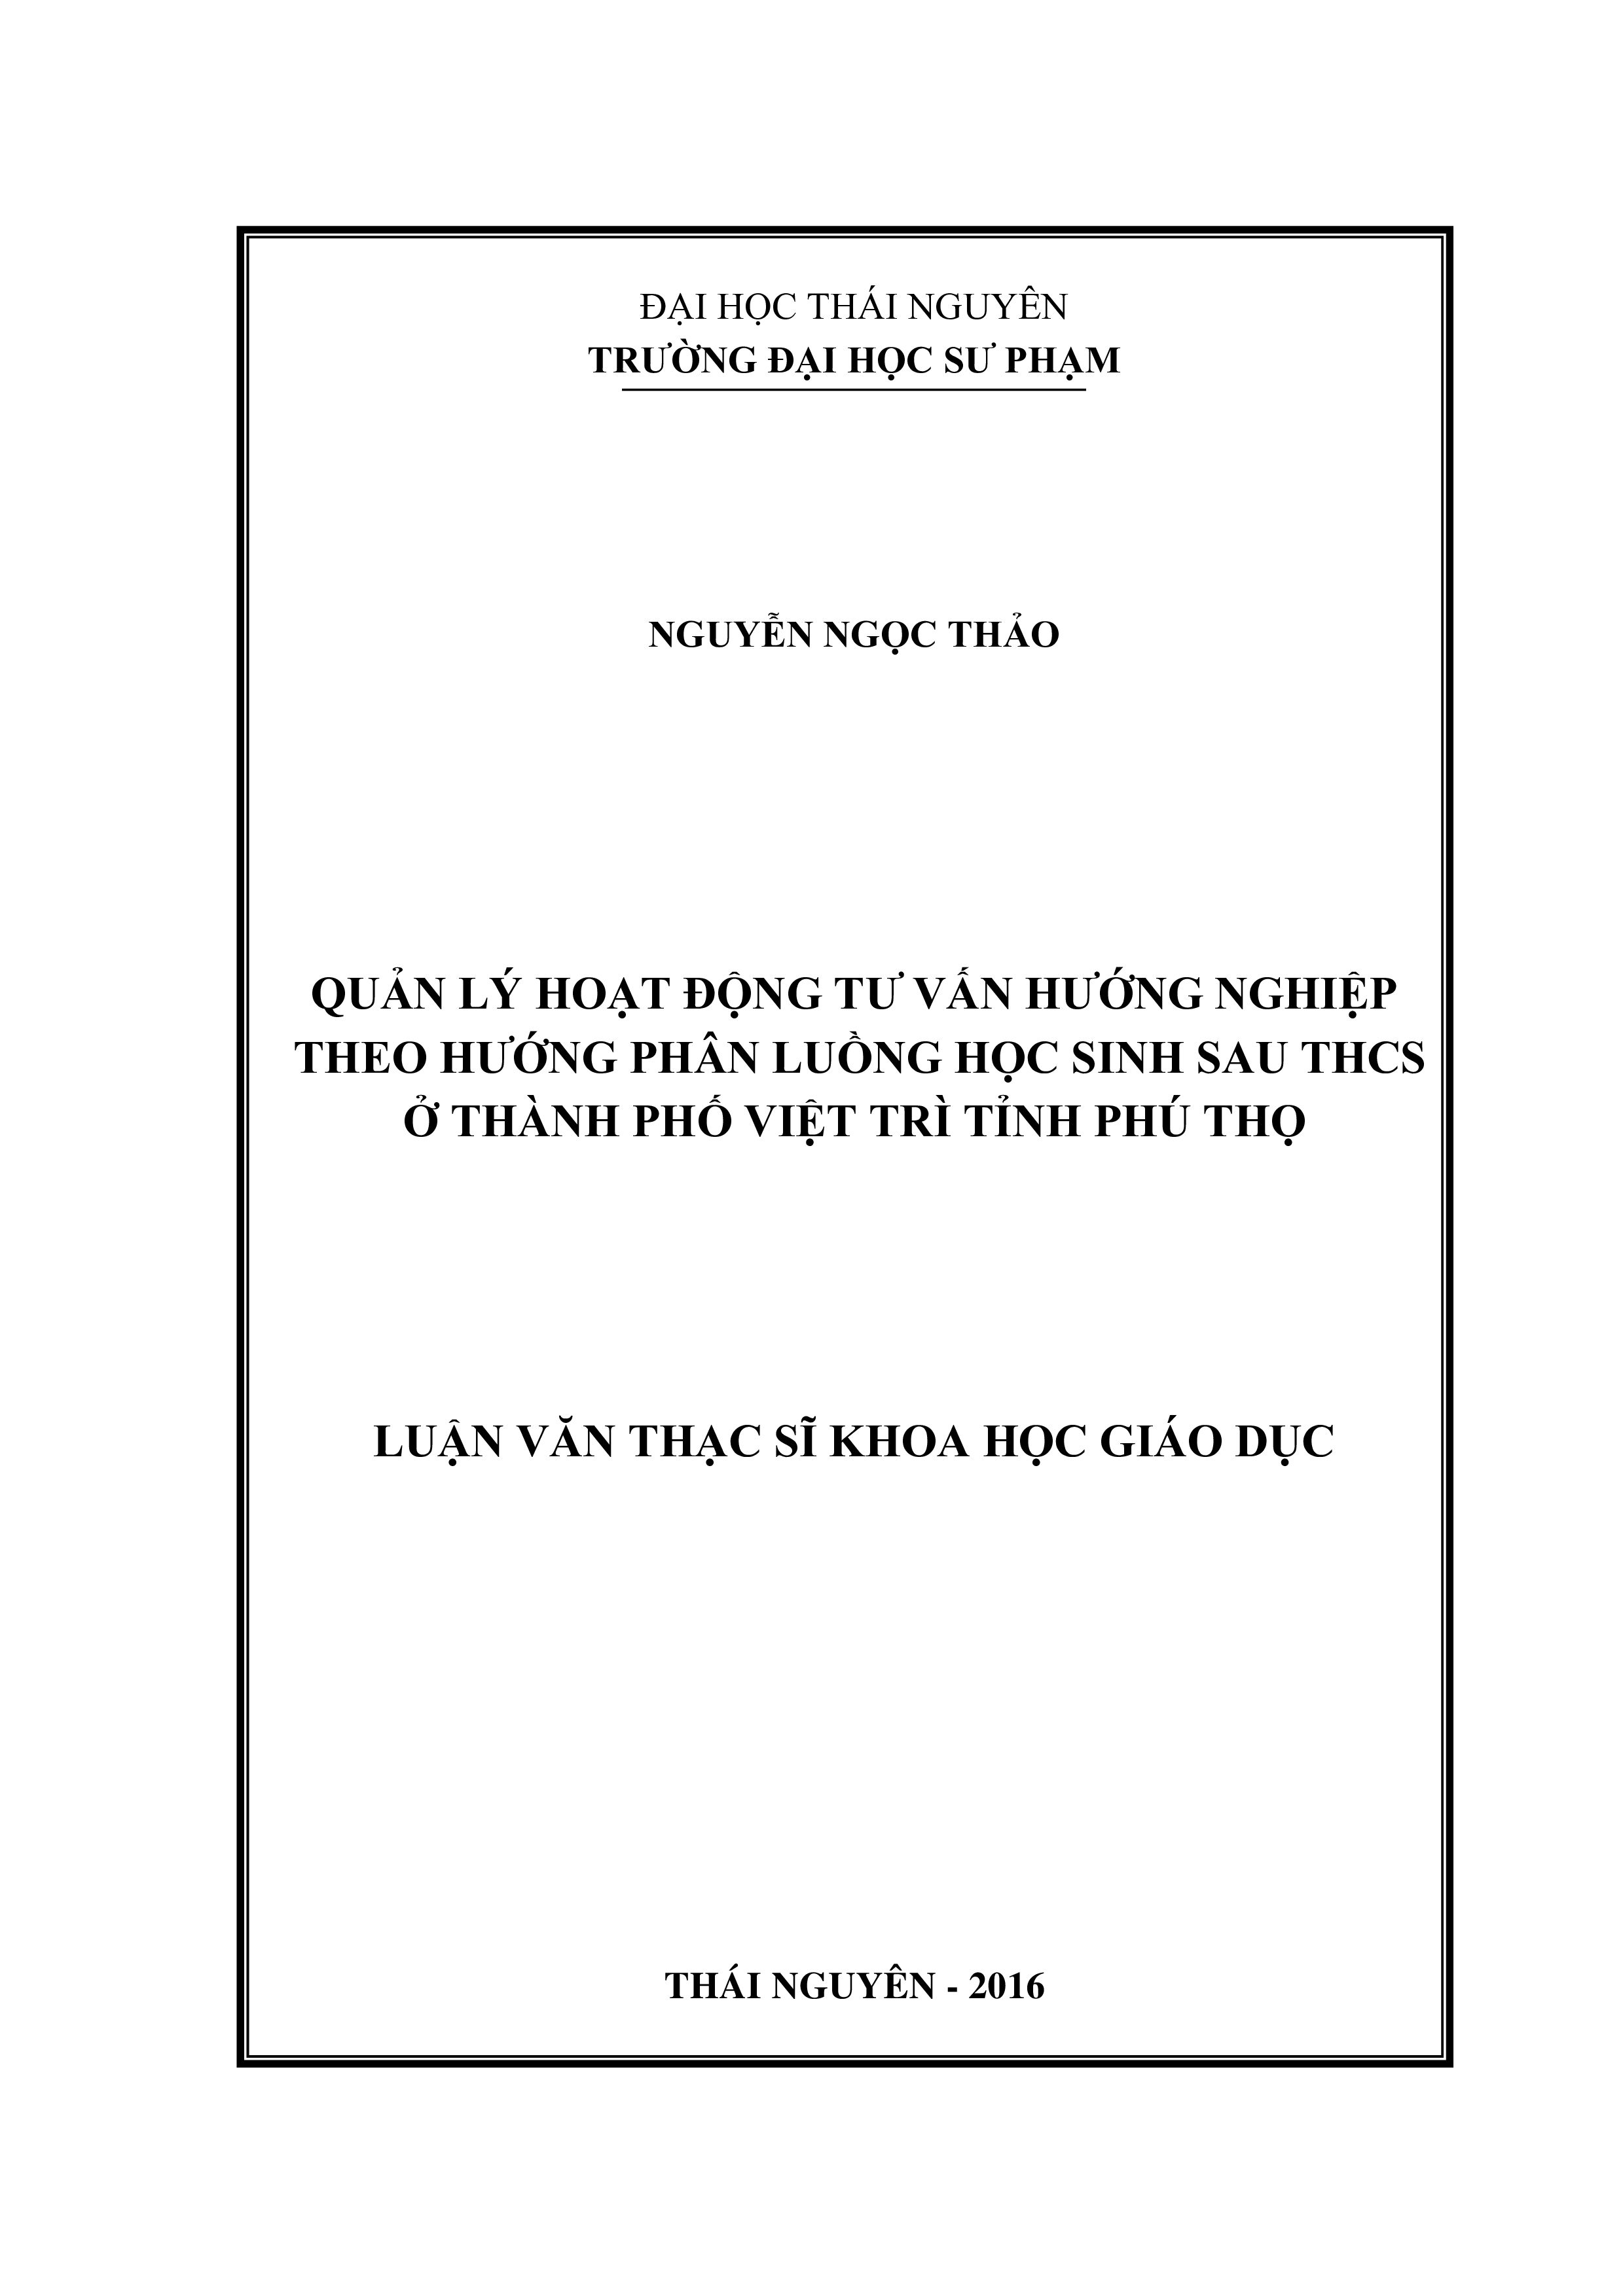 Quản lý hoạt động tư vấn hướng nghiệp theo hướng phân luồng học sinh sau THCS ở thành  phố Việt Trì tỉnh Phú Thọ